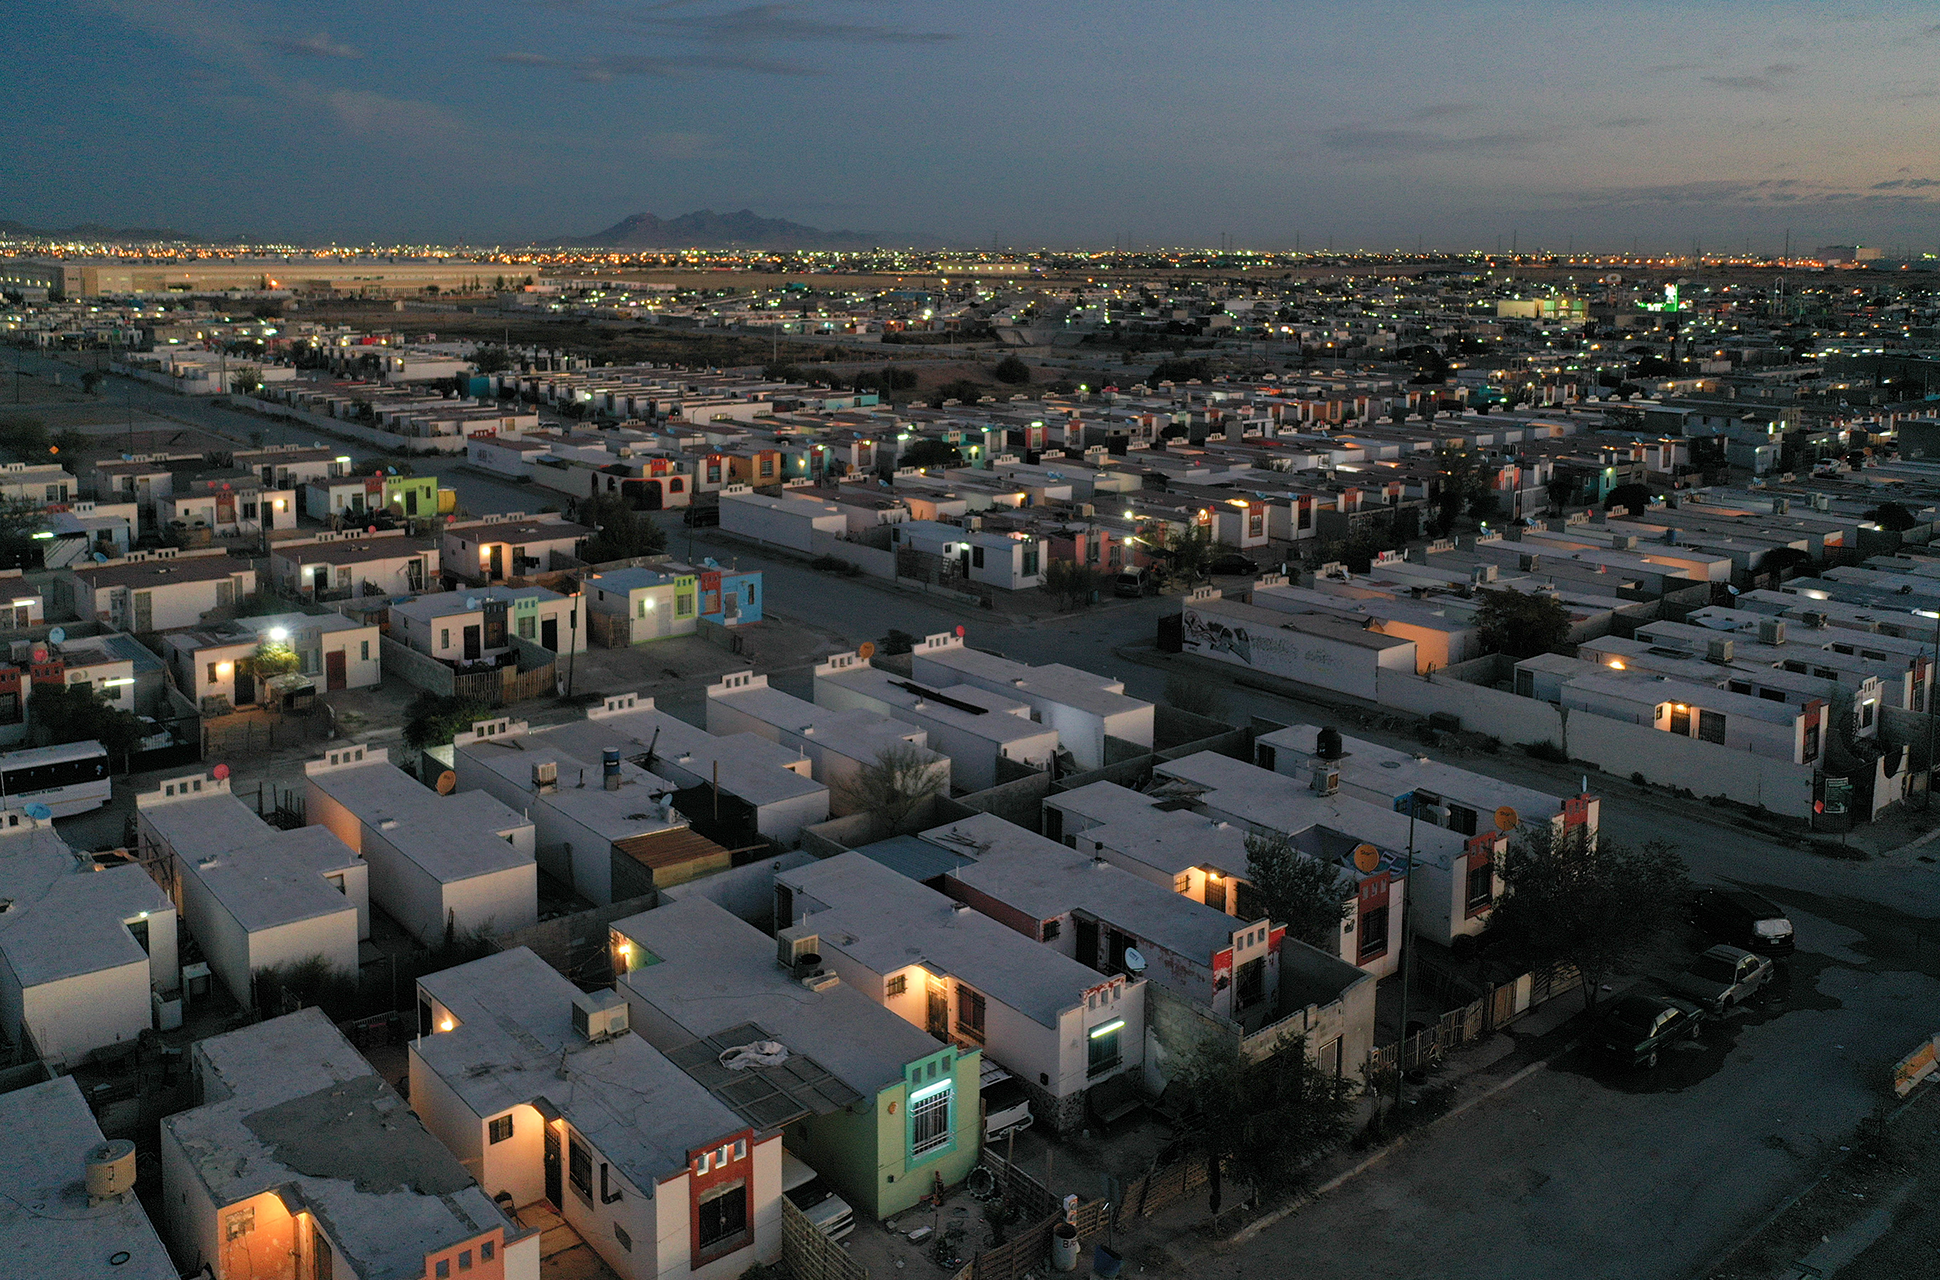 Casas pobres, casas de nadie: Palmas del Sol en Ciudad Juárez